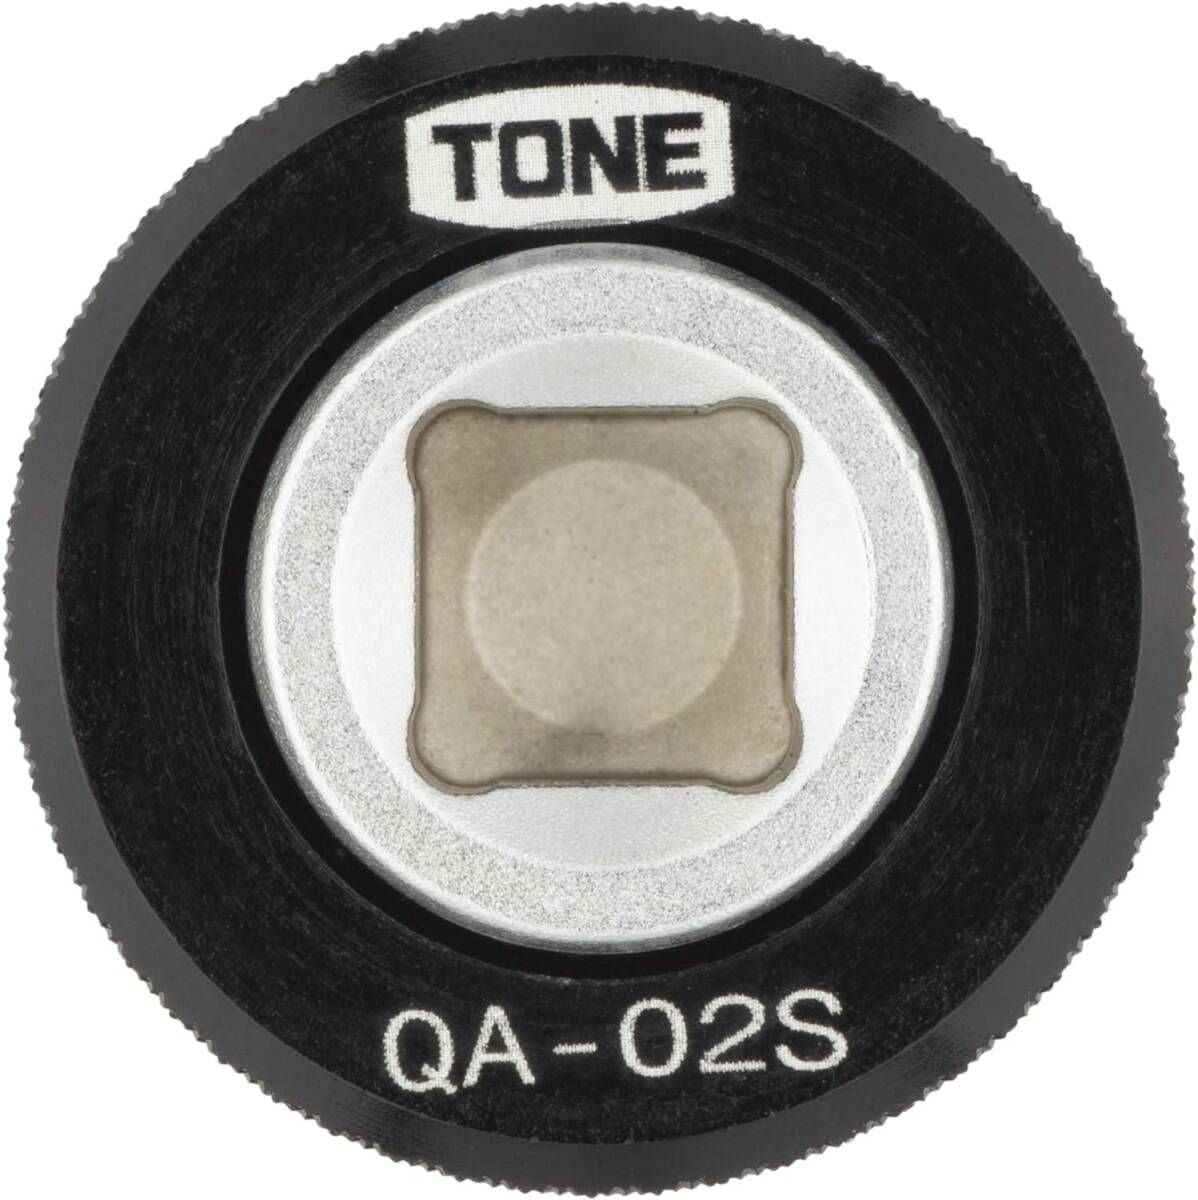 差込角:6.35mm(1/4") コンパクト トネ(TONE) クイックアダプター QA-02S 差込角6.35mm(1/4") _画像4